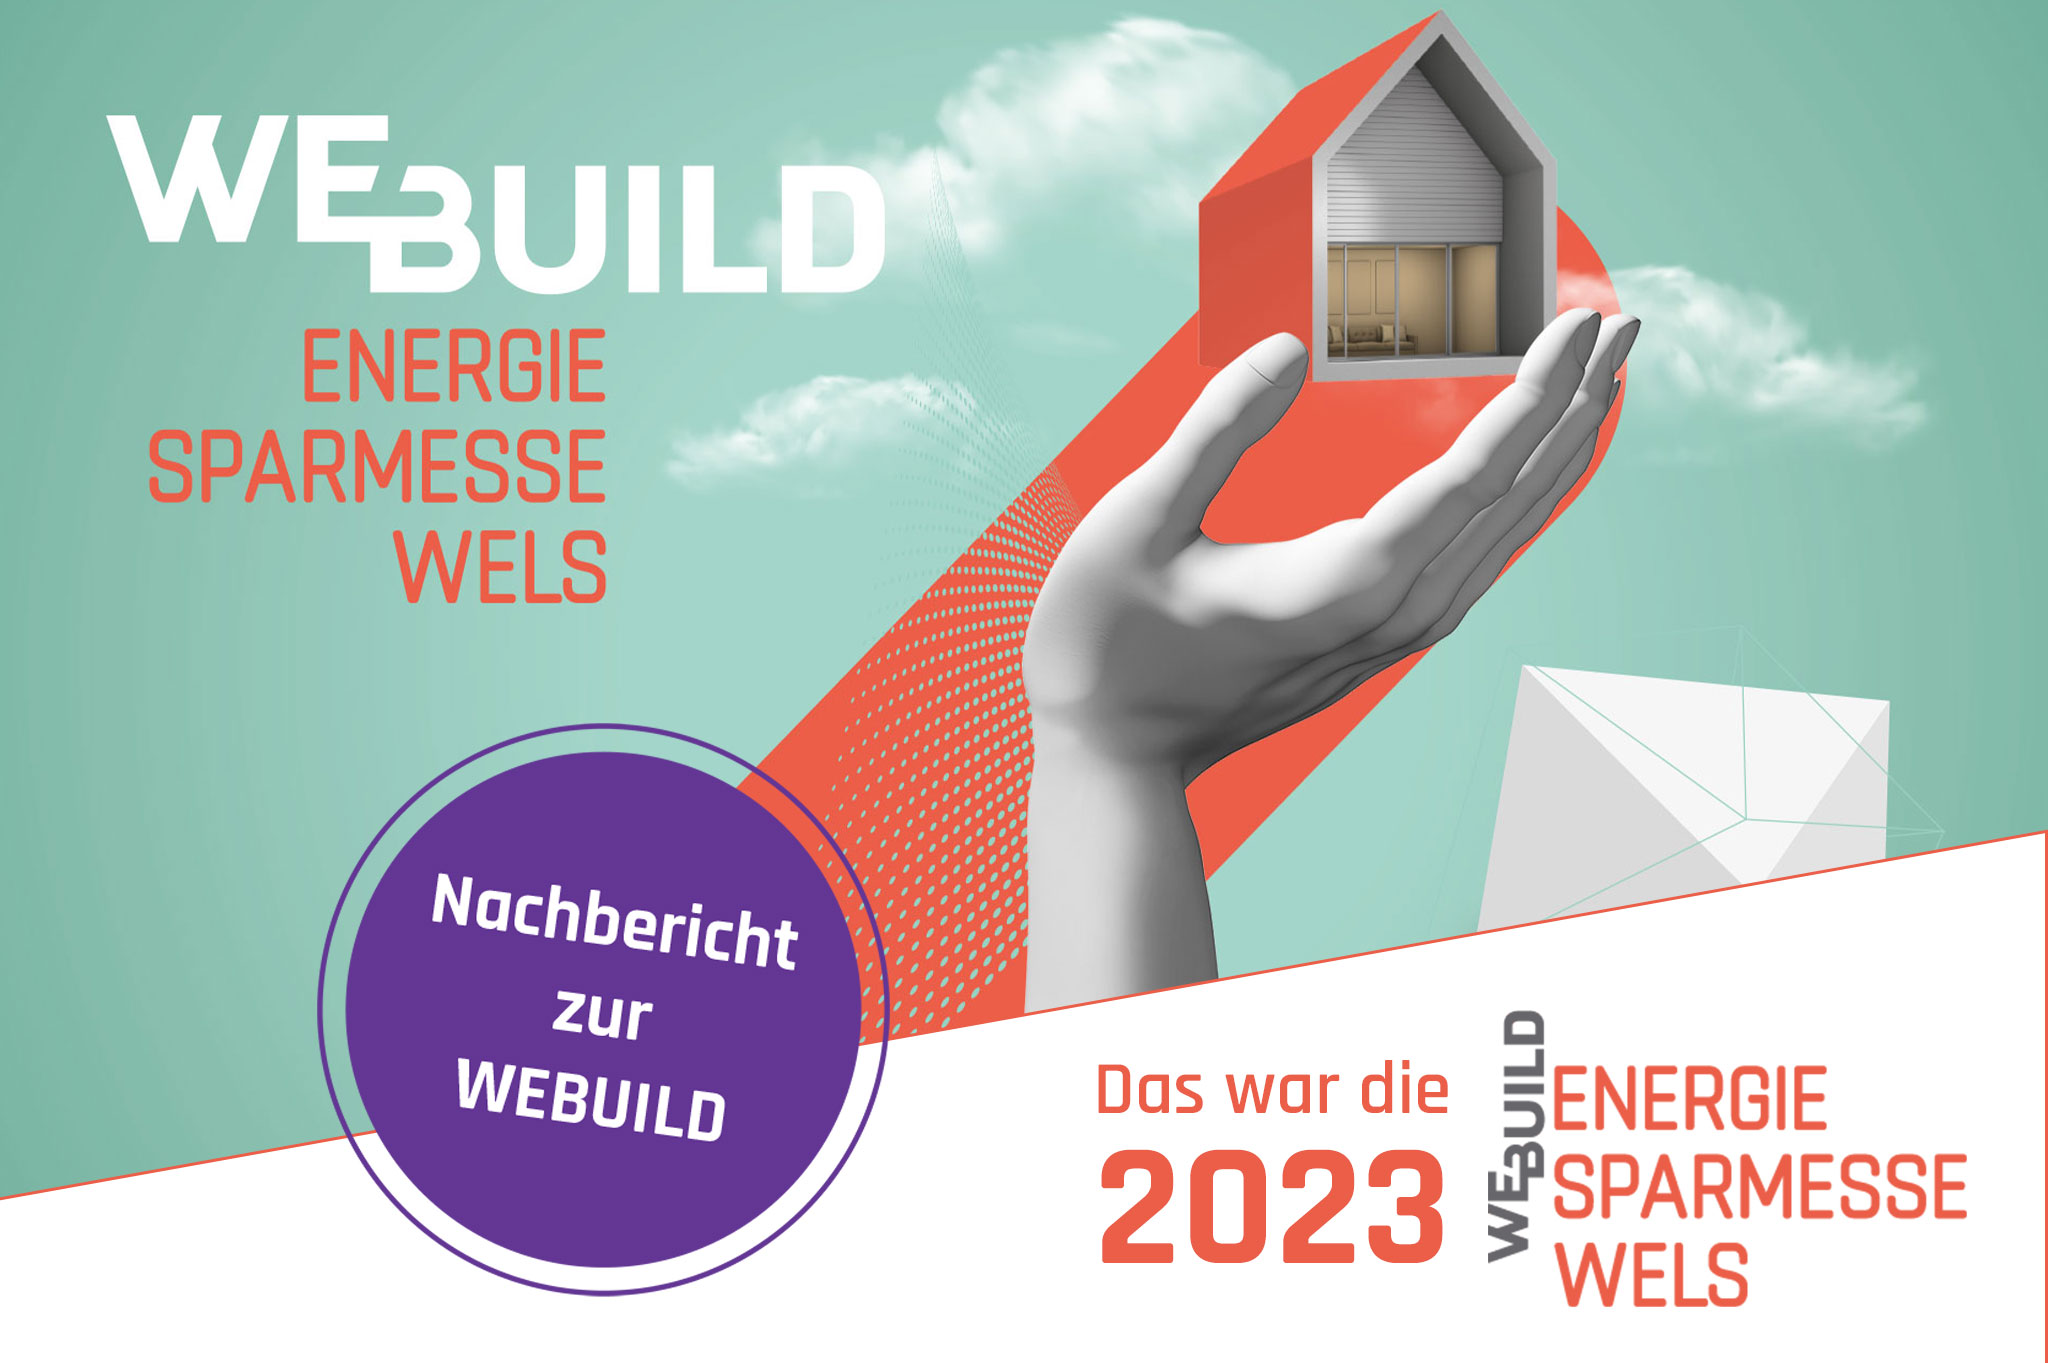 Nachbericht zur WEBUILD Energiesparmesse Wels 2023!